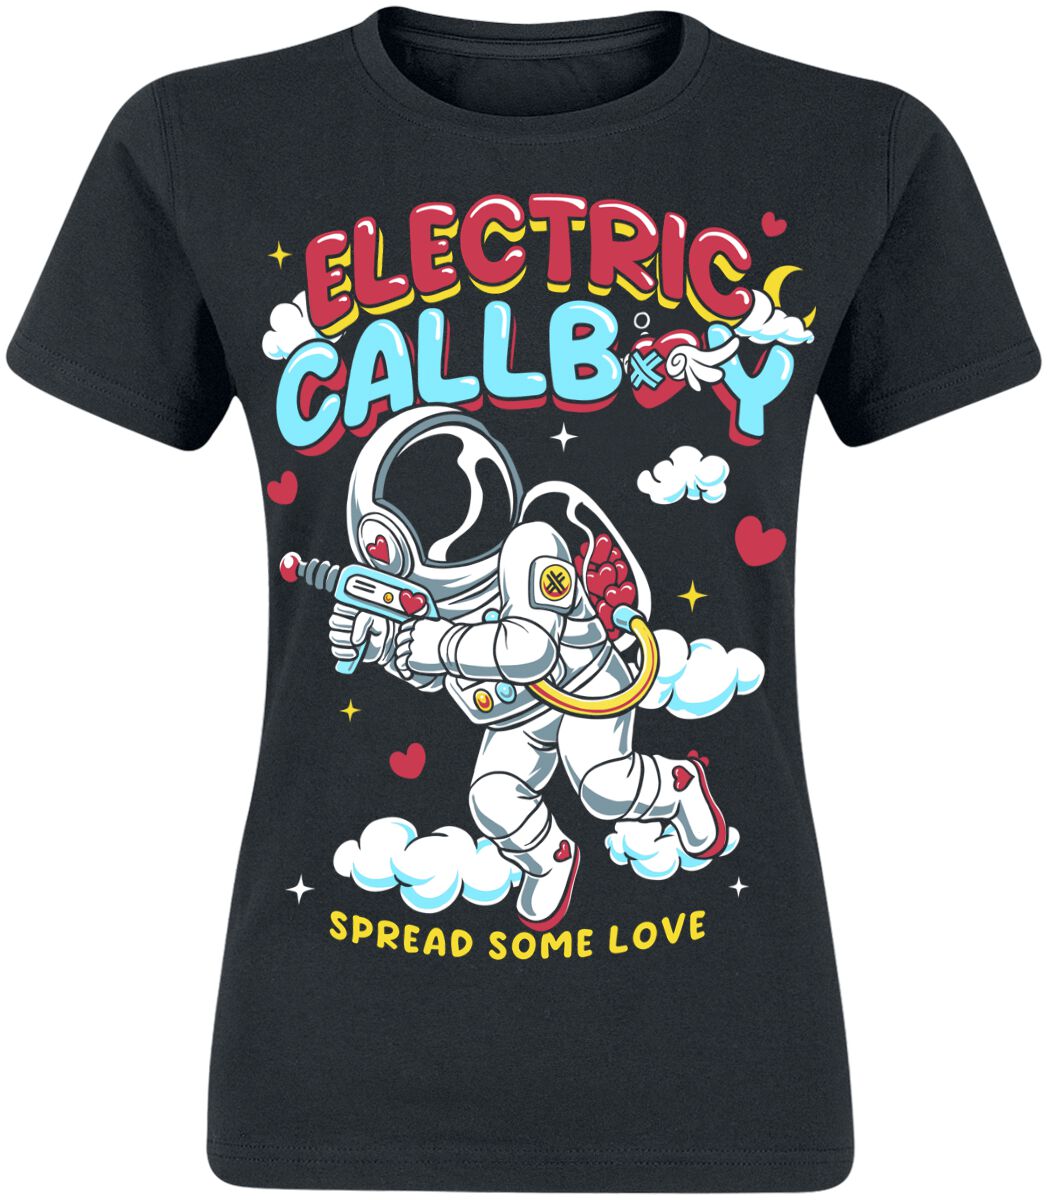 Electric Callboy T-Shirt - Spread Some Love - S bis XXL - für Damen - Größe XL - schwarz  - EMP exklusives Merchandise!